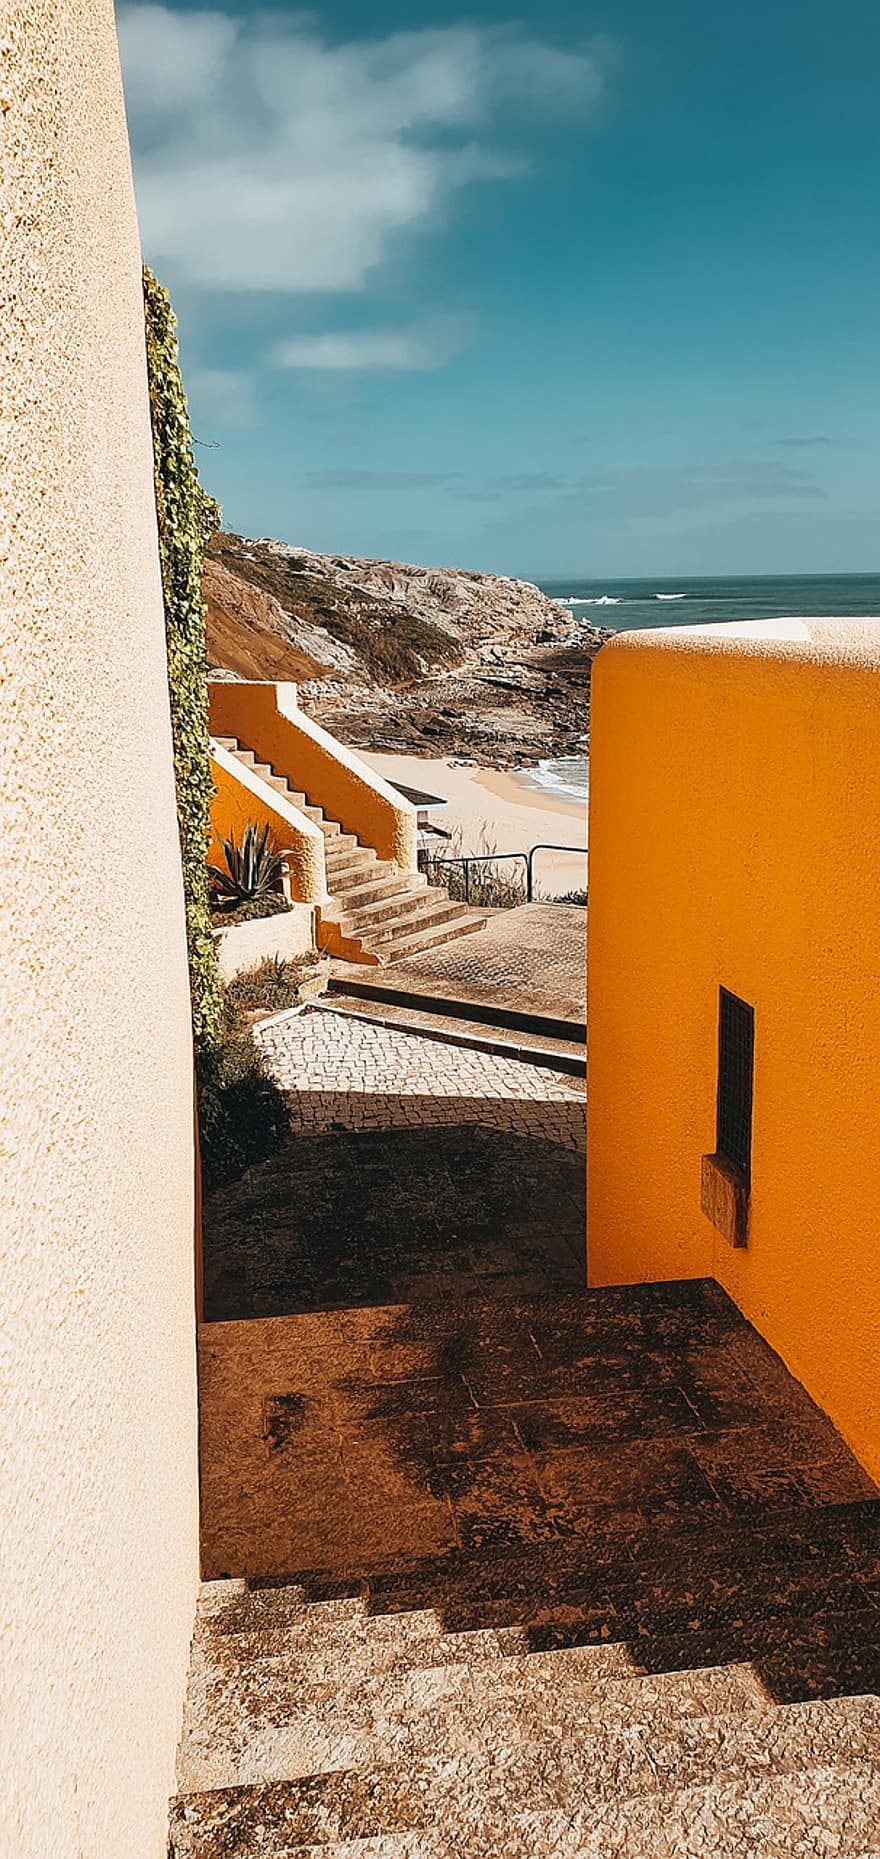 le scale, edifici, spiaggia, sabbia, oceano, viaggio, turismo, natura, Portogallo, architettura